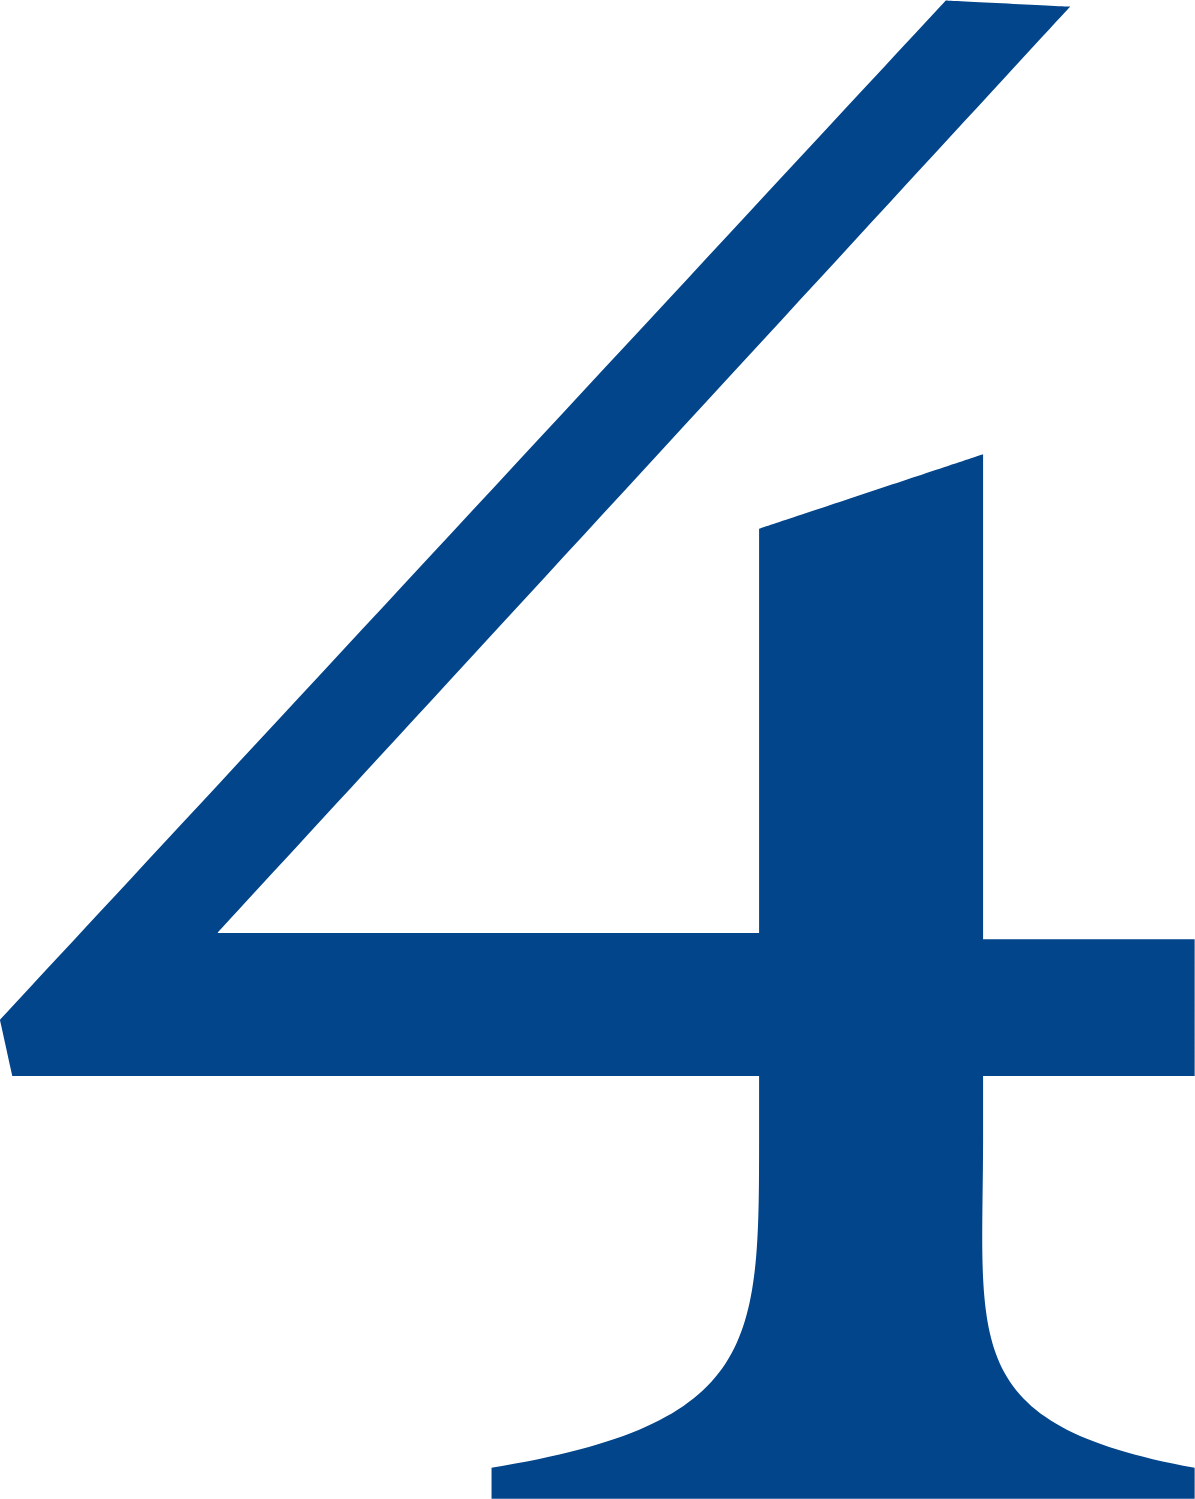 4imprint Group logo (transparent PNG)